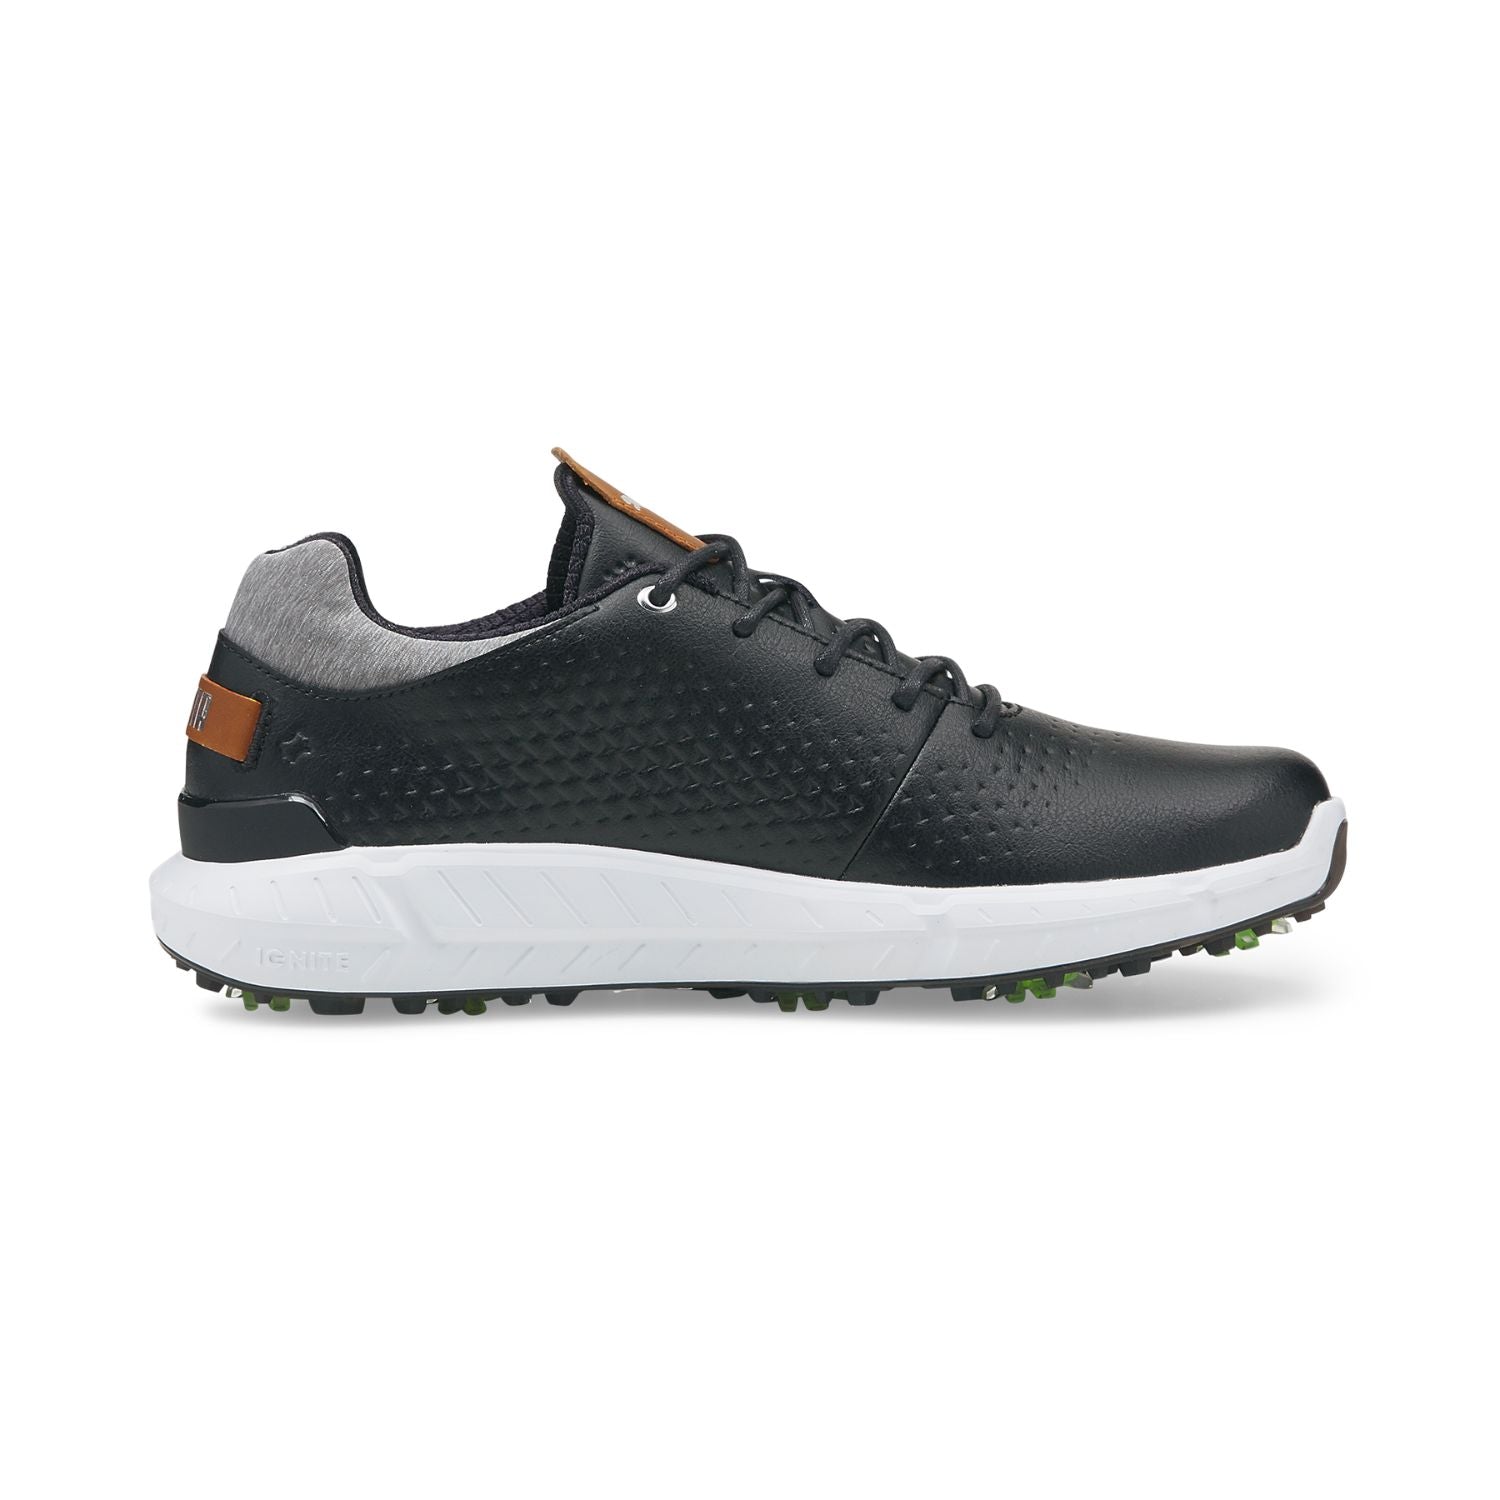 Puma IGNITE Articulate Leather Men's Golf Shoes